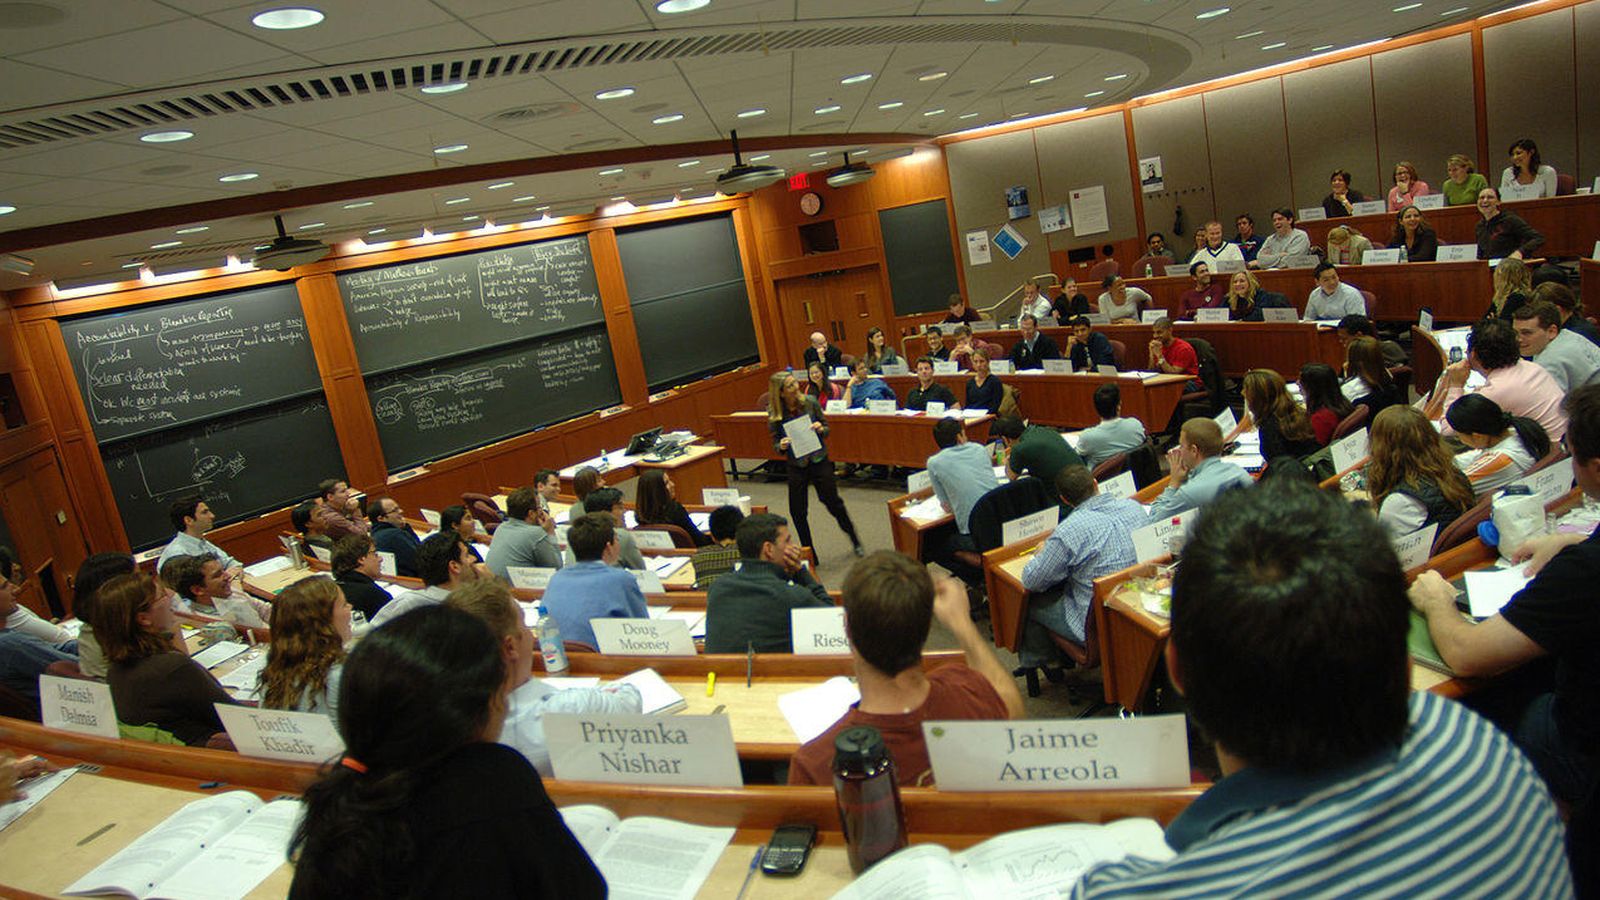 Foto: Un aula de la Escuela de Negocios de Harvard. (CC/HBS1908)